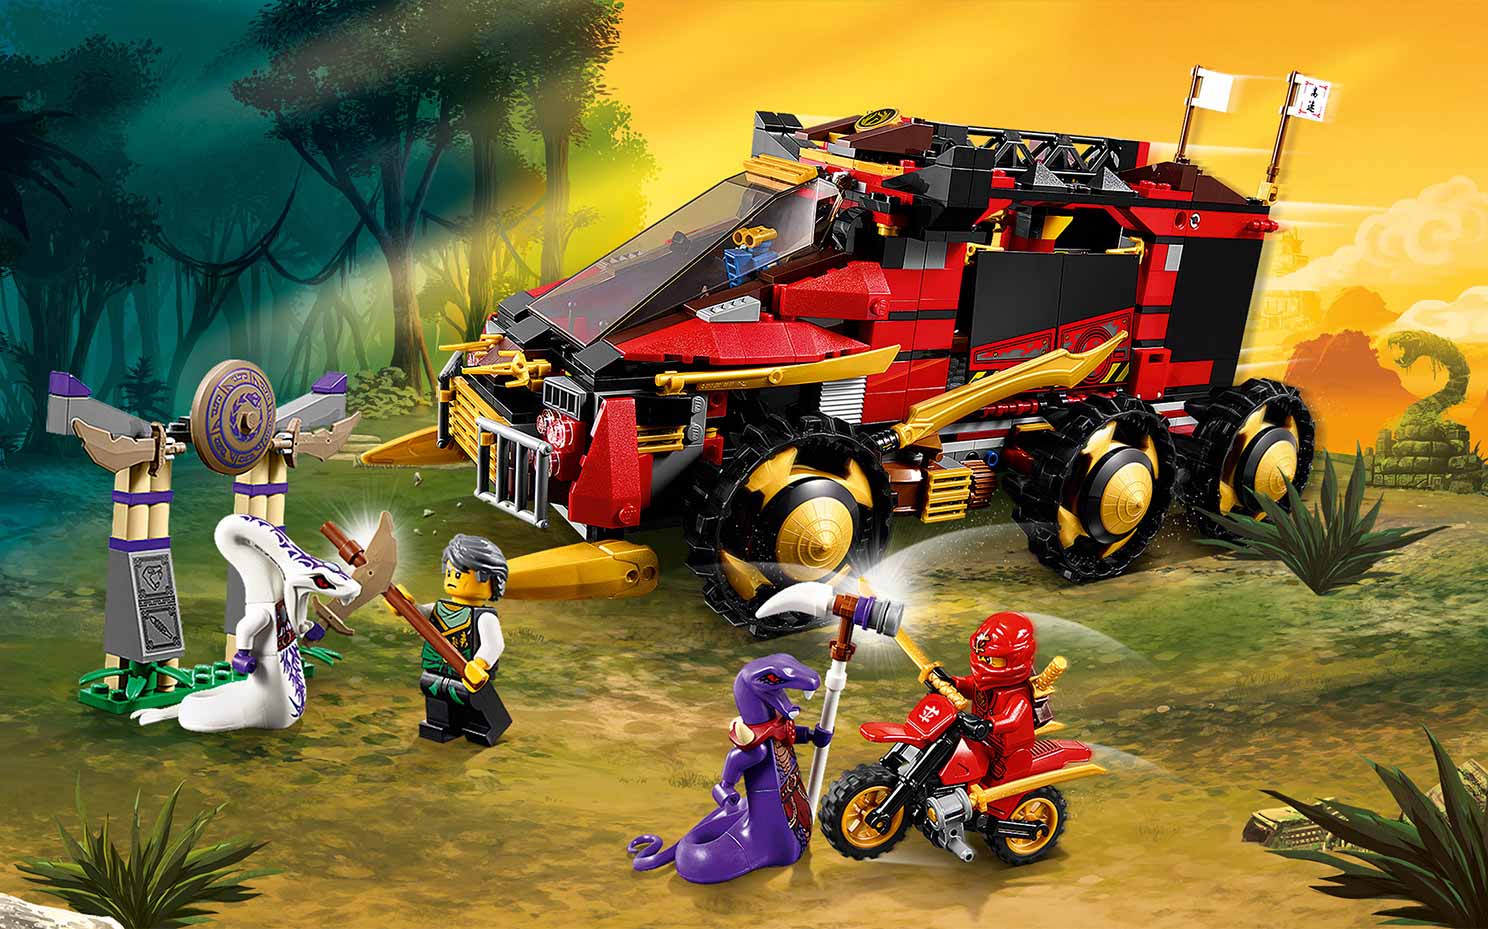 LEGO®-NINJAGO® Le véhicule de combat Dieselnaut Jeu pour Enfant 9